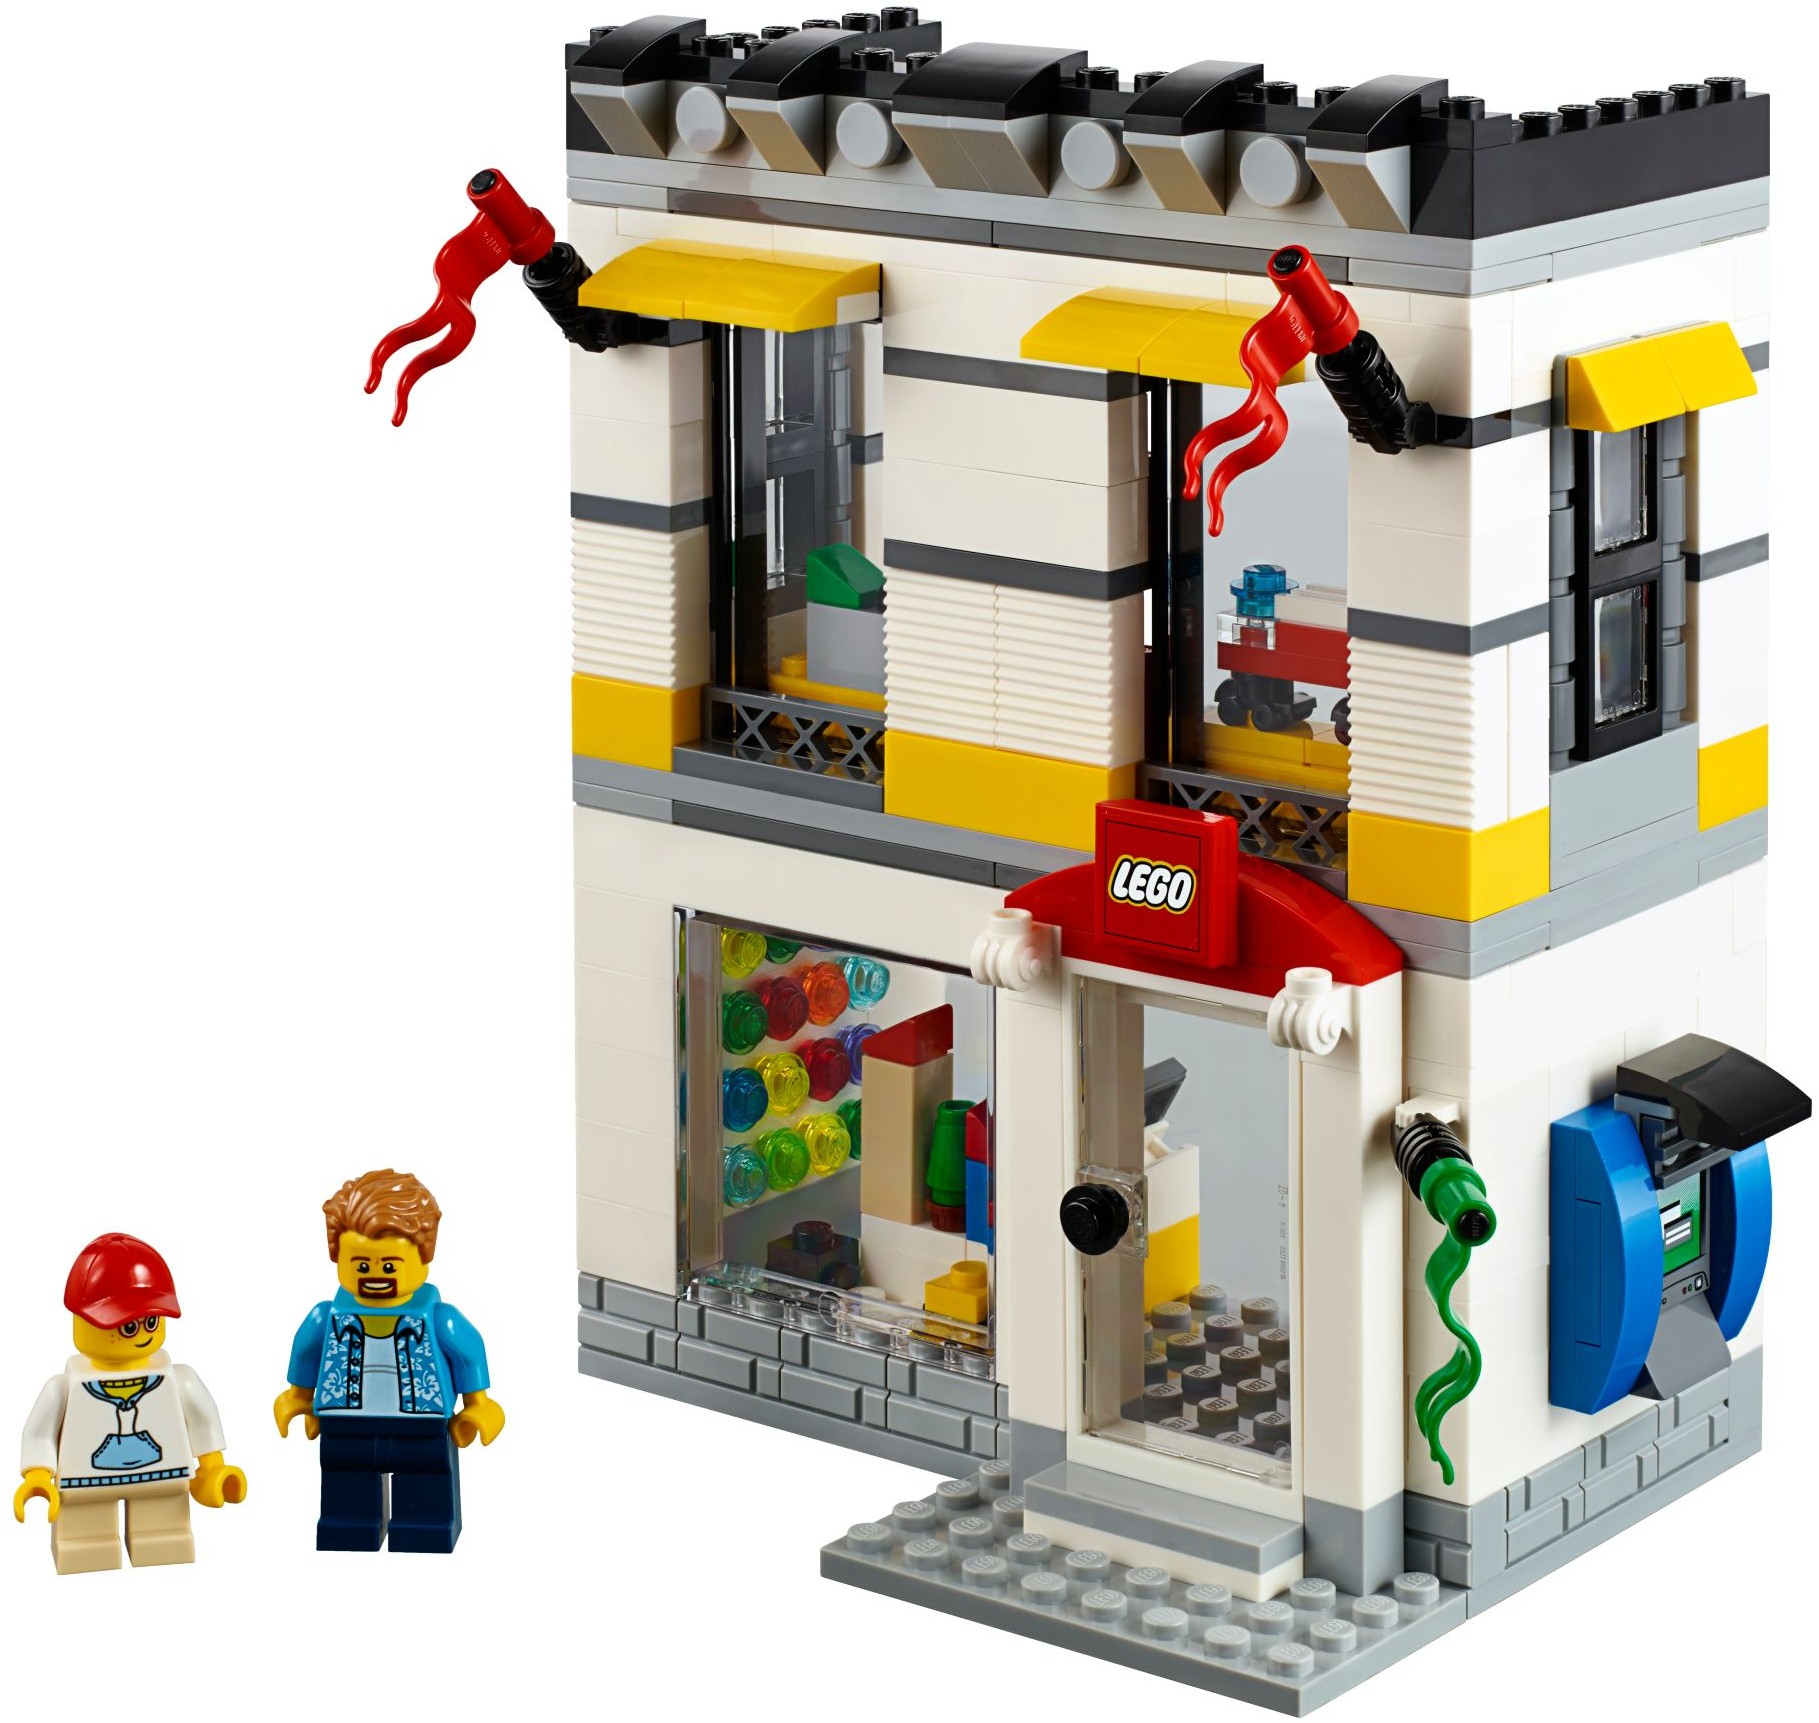 Instrument Oxide Ryd op LEGO brand stores | Brickset: LEGO set guide and database